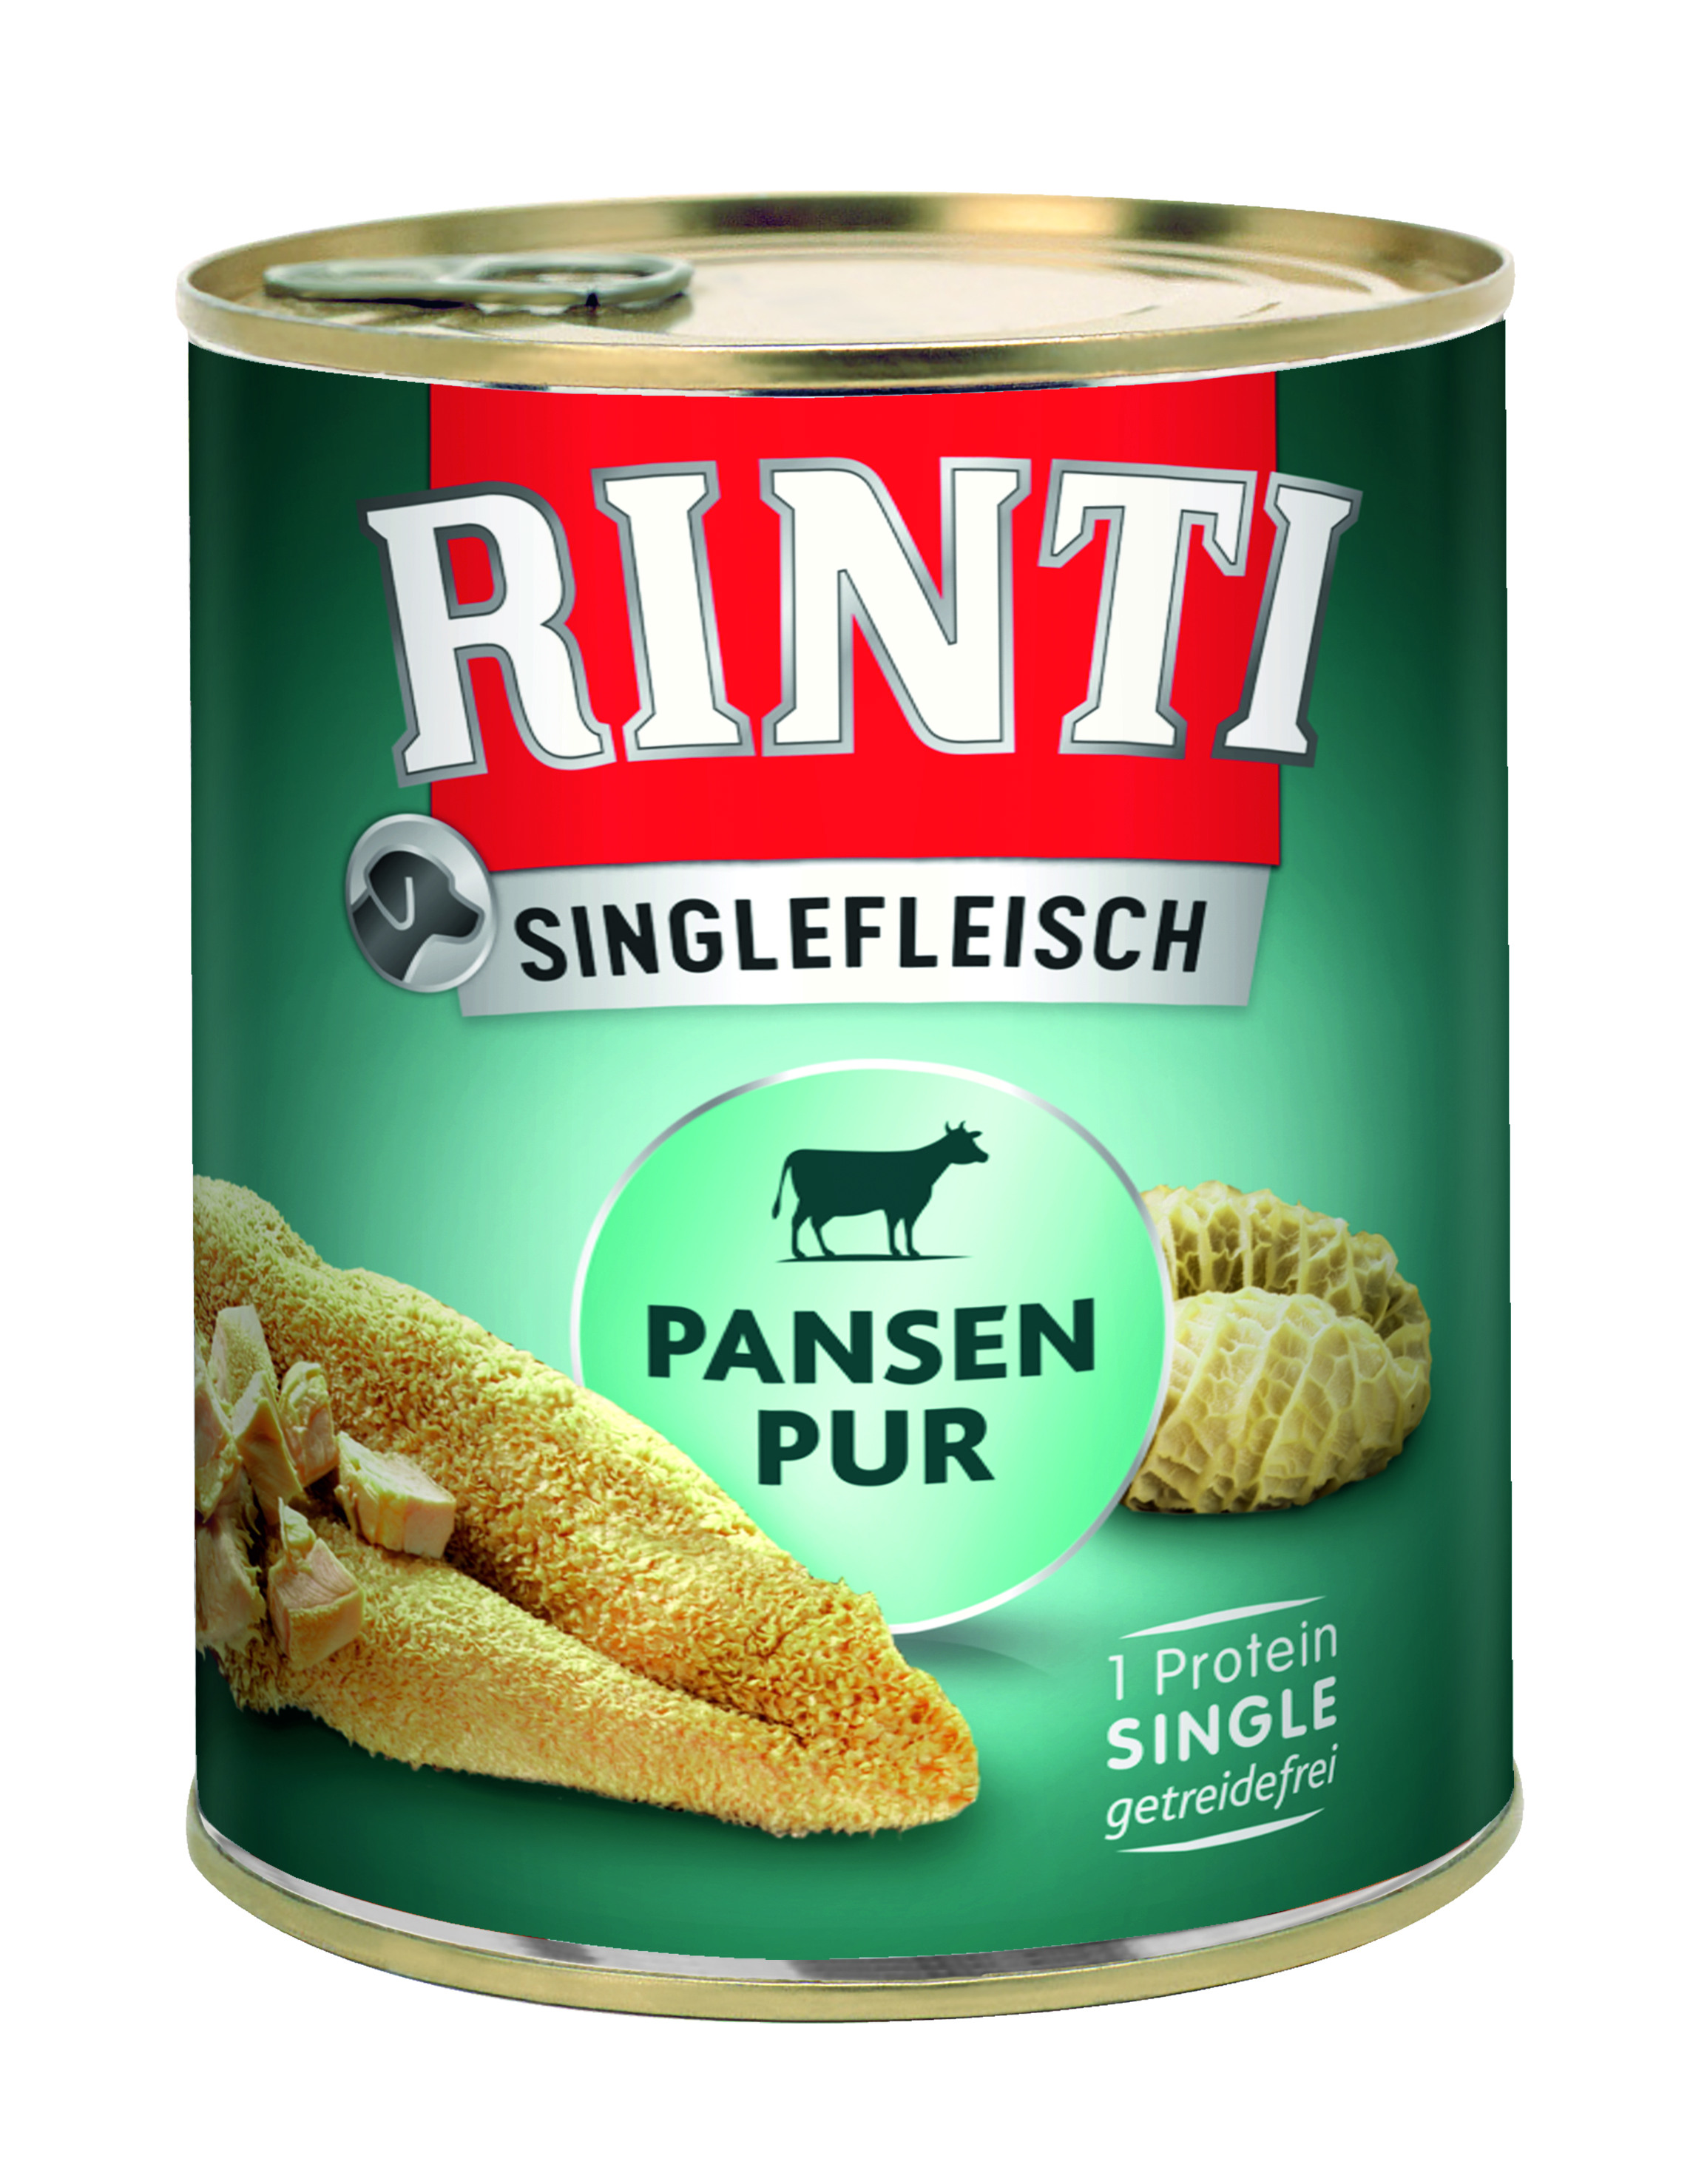 RINTI Singlefleisch Pansen Pur 800g